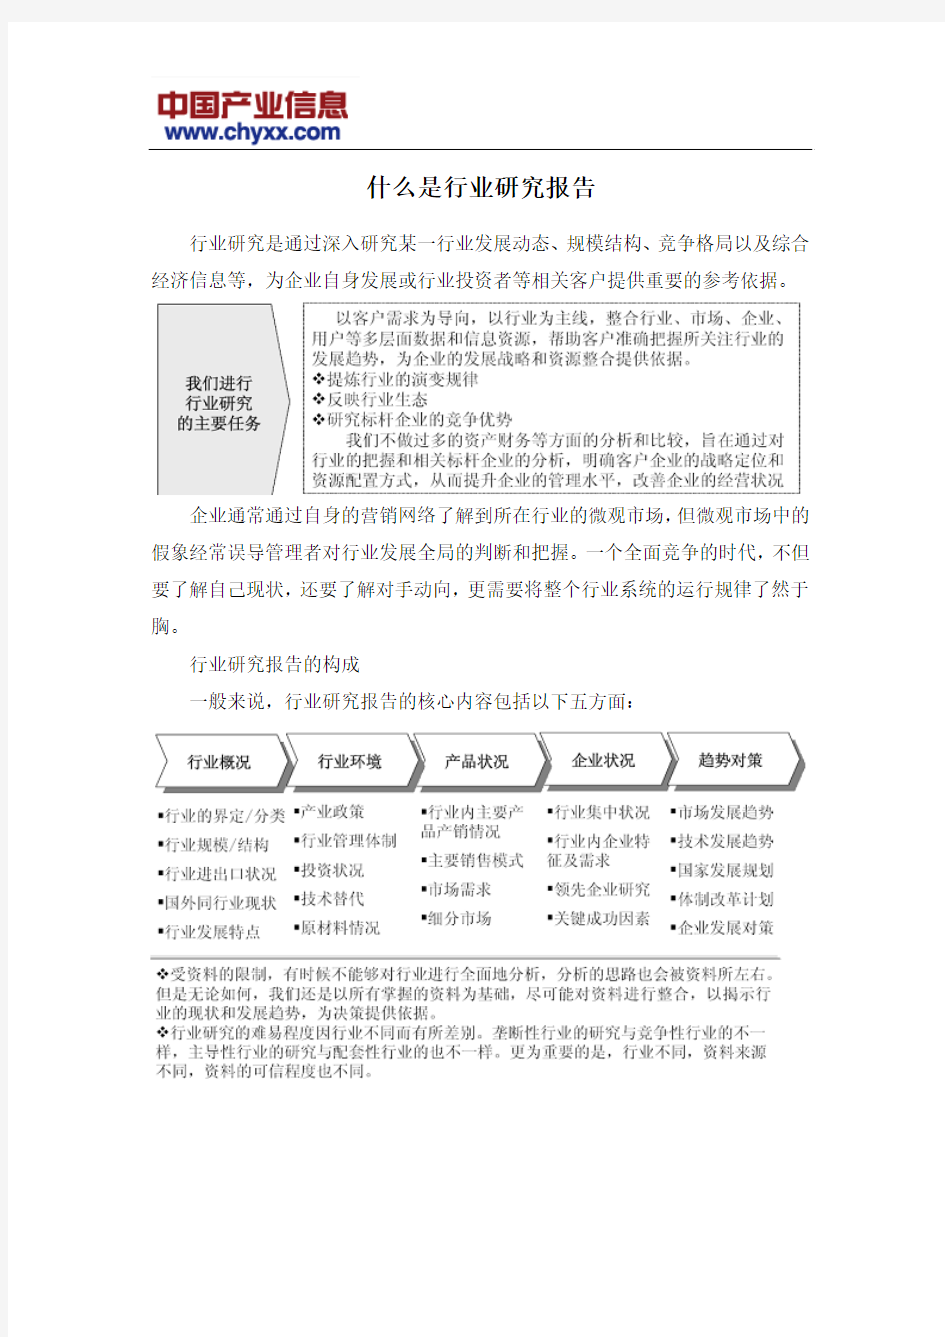 2014年中国投影仪产业研究报告